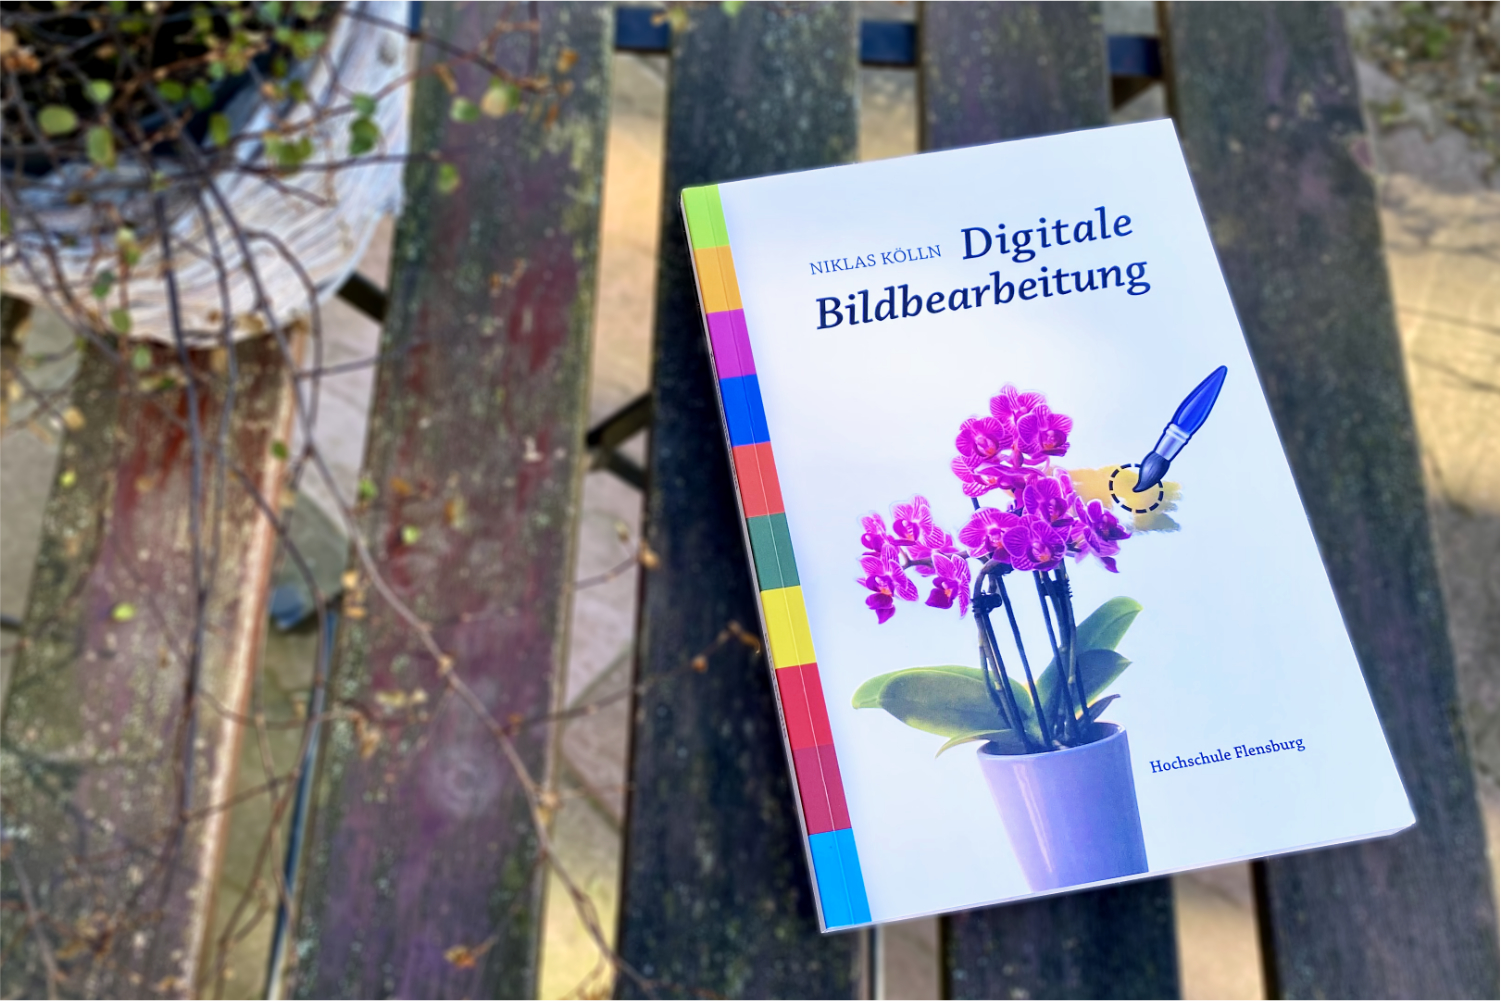 Das Buch »Digitale Bildbearbeitung« liegt auf einem hölzernen Tisch